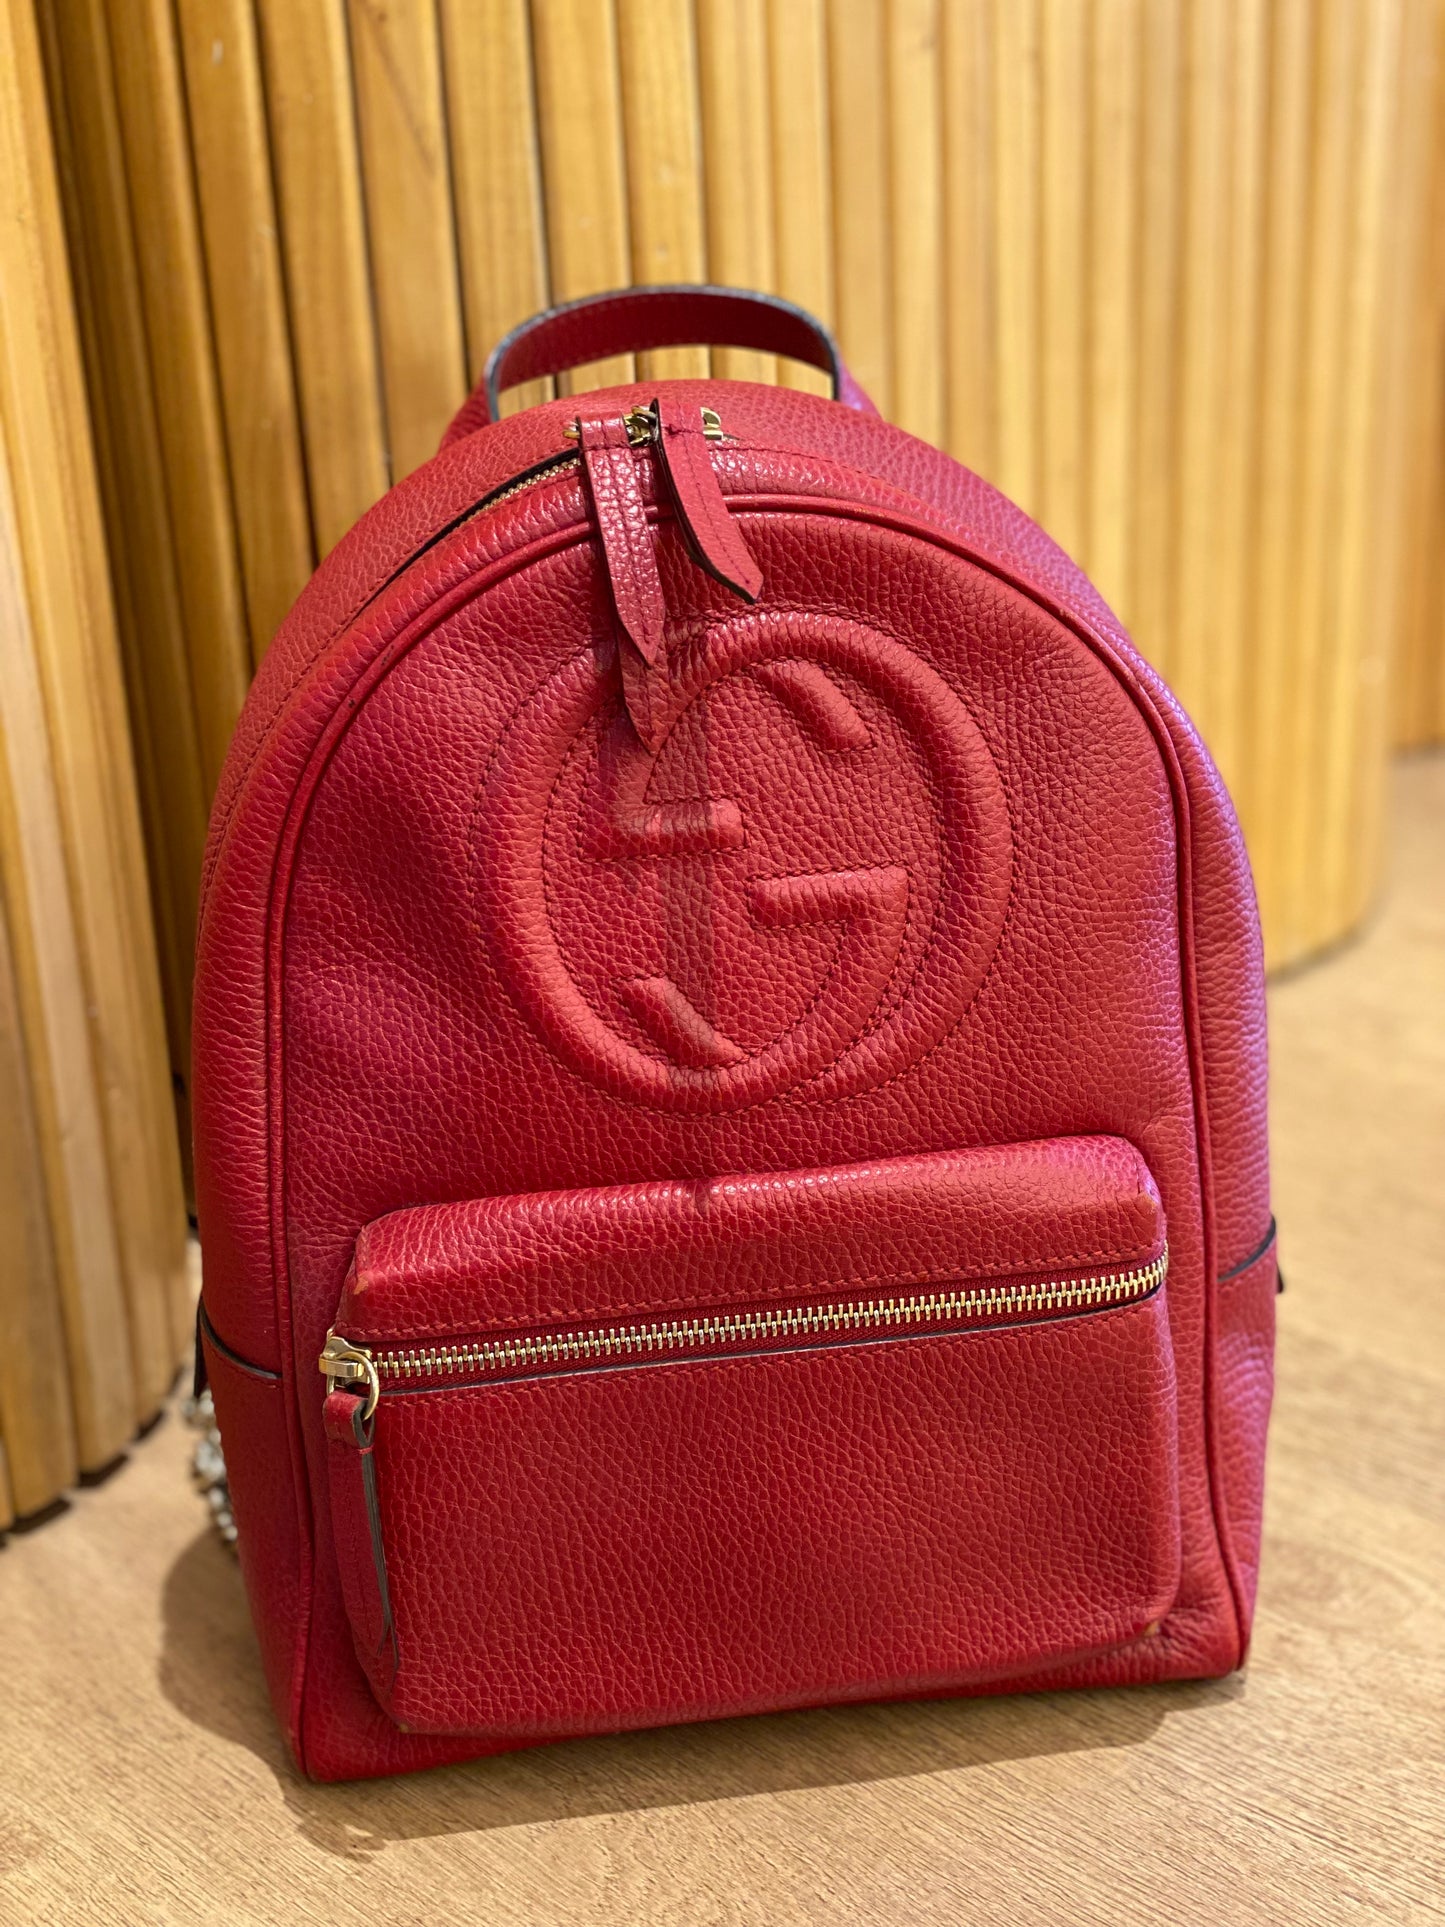 Mochila Gucci Soho Chain Backpack Red